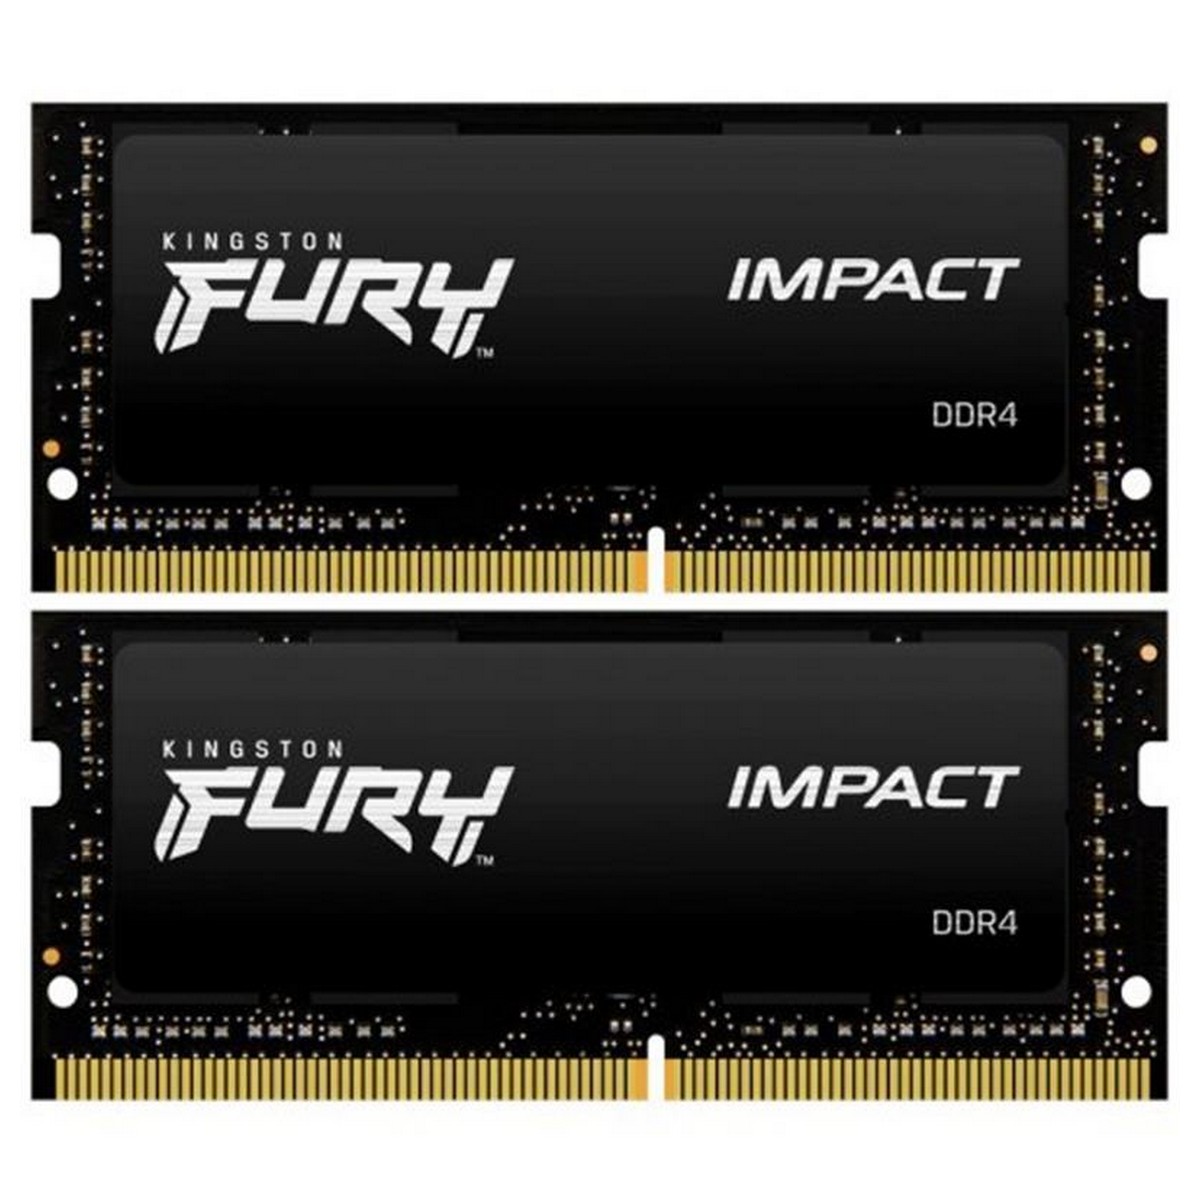 ОЗУ Kingston Fury Impact DDR4 64GB (2x32GB) 3200 MHz (KF432S20IBK2/64)